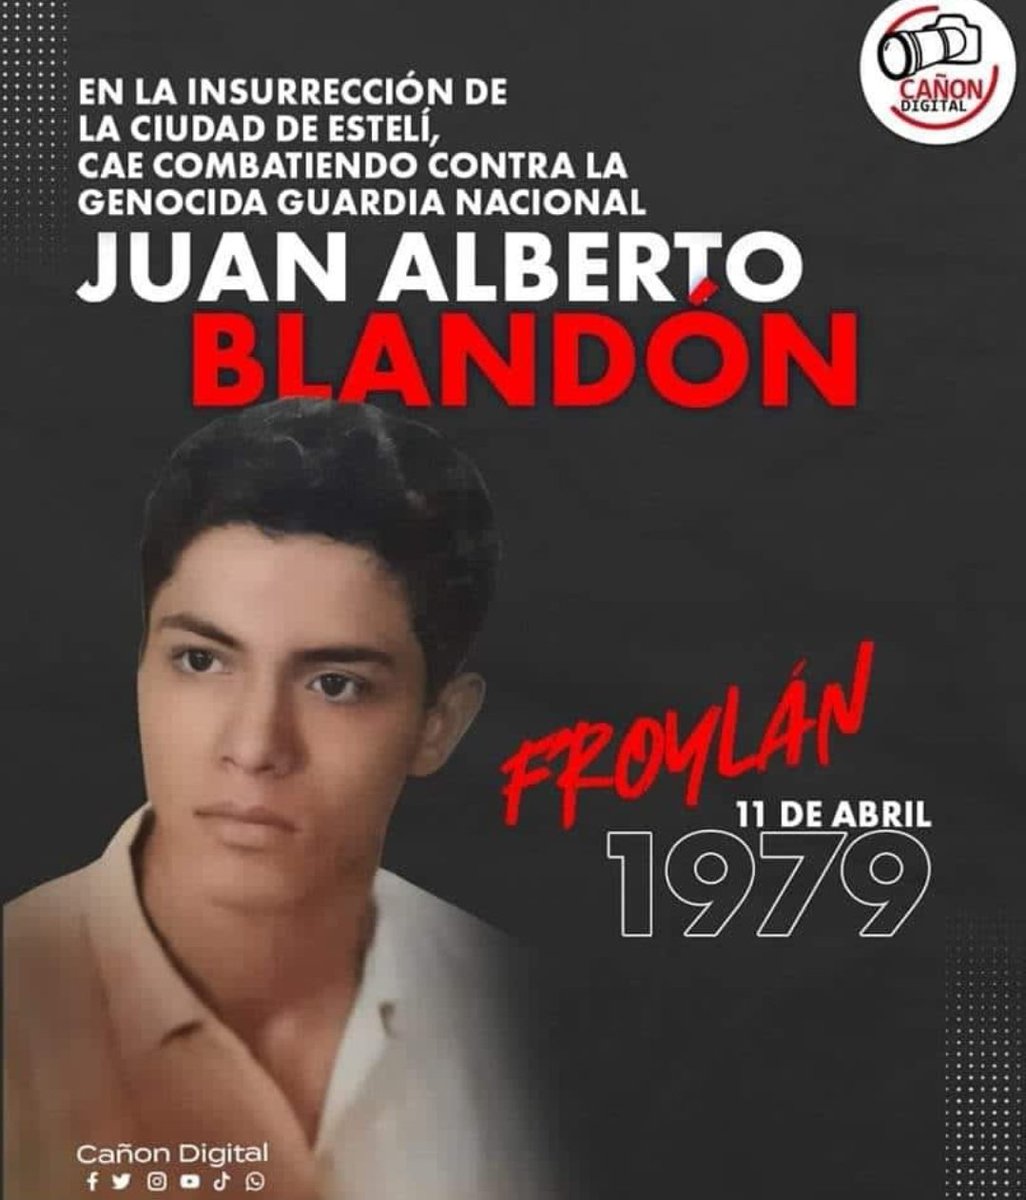 Juan Alberto Blandón cae combatiendo en la segunda y heroica insurrección de Estelí un 11 de Julio 1979, honor y gloria a nuestros héroes y mártires de la Revolución Popular Sandinista #4519LaPatriaLaRevolucion #ManaguaSandinista #12Abril